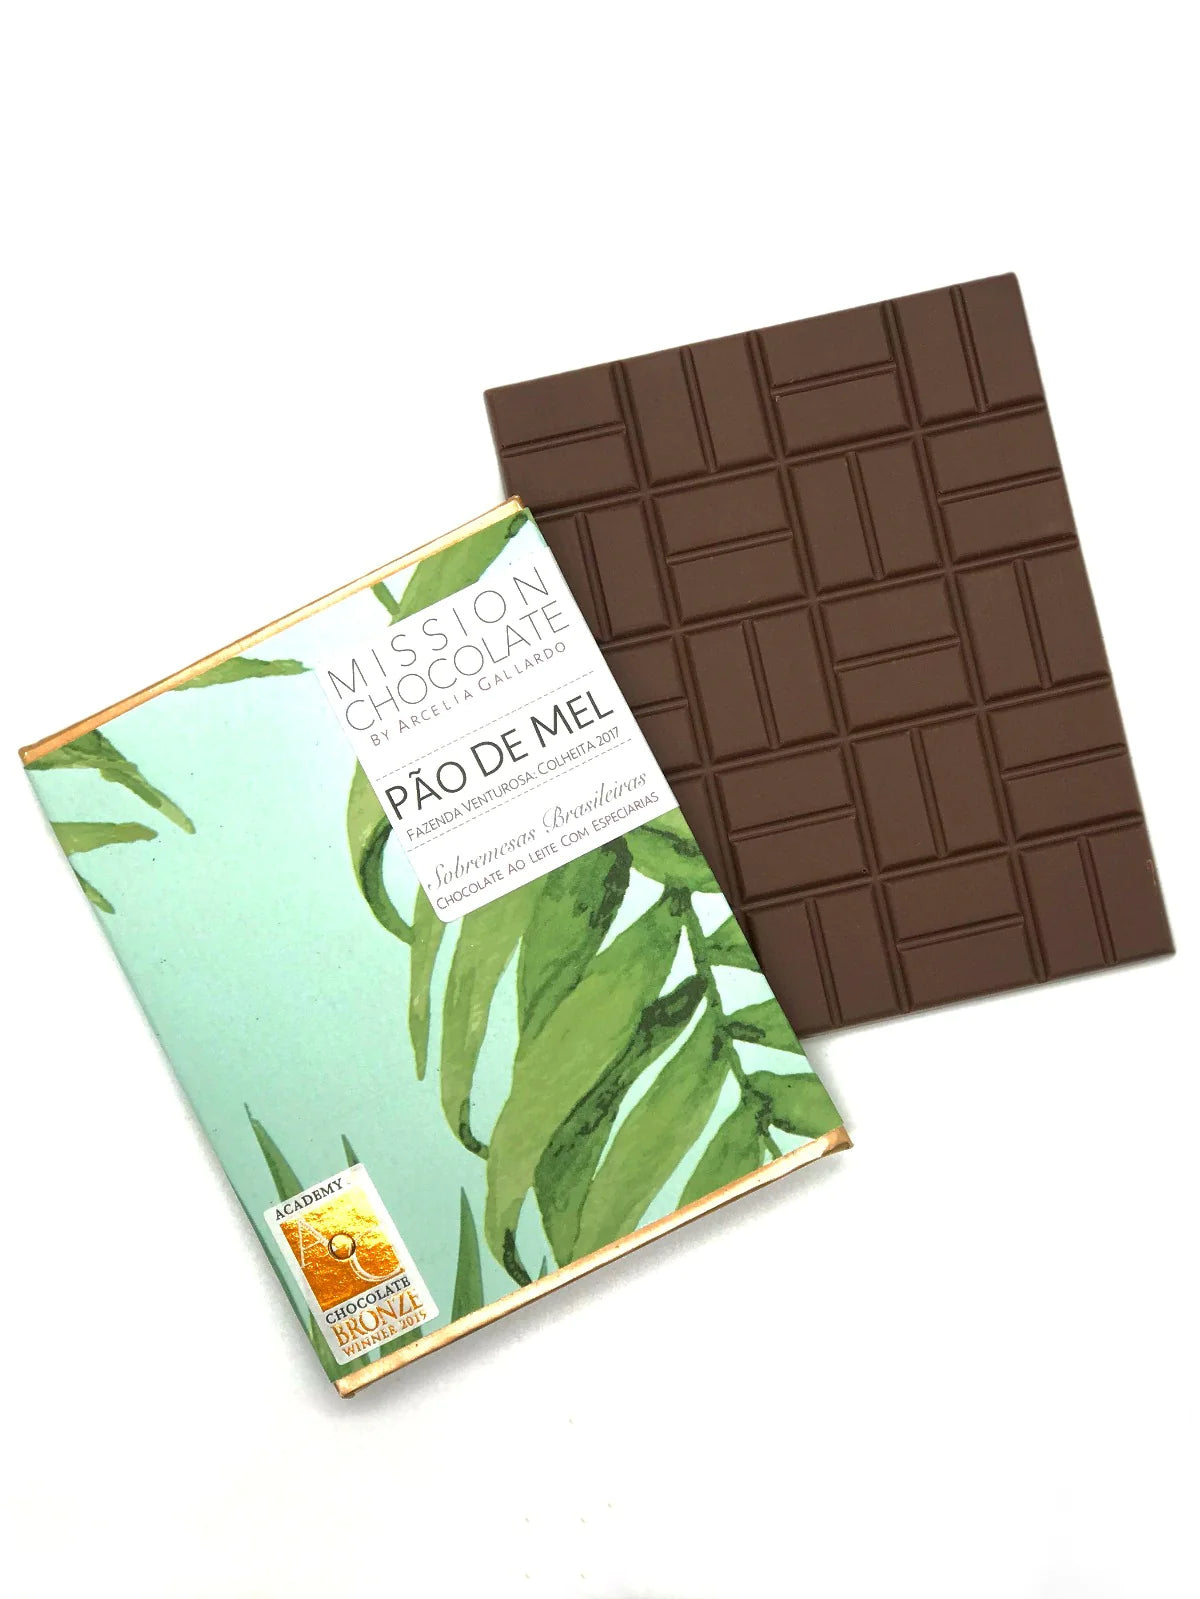 PÃO DE MEL AO LEITE | WARM SPICES MILK CHOCOLATE Chocolate - Casa de Chocolates